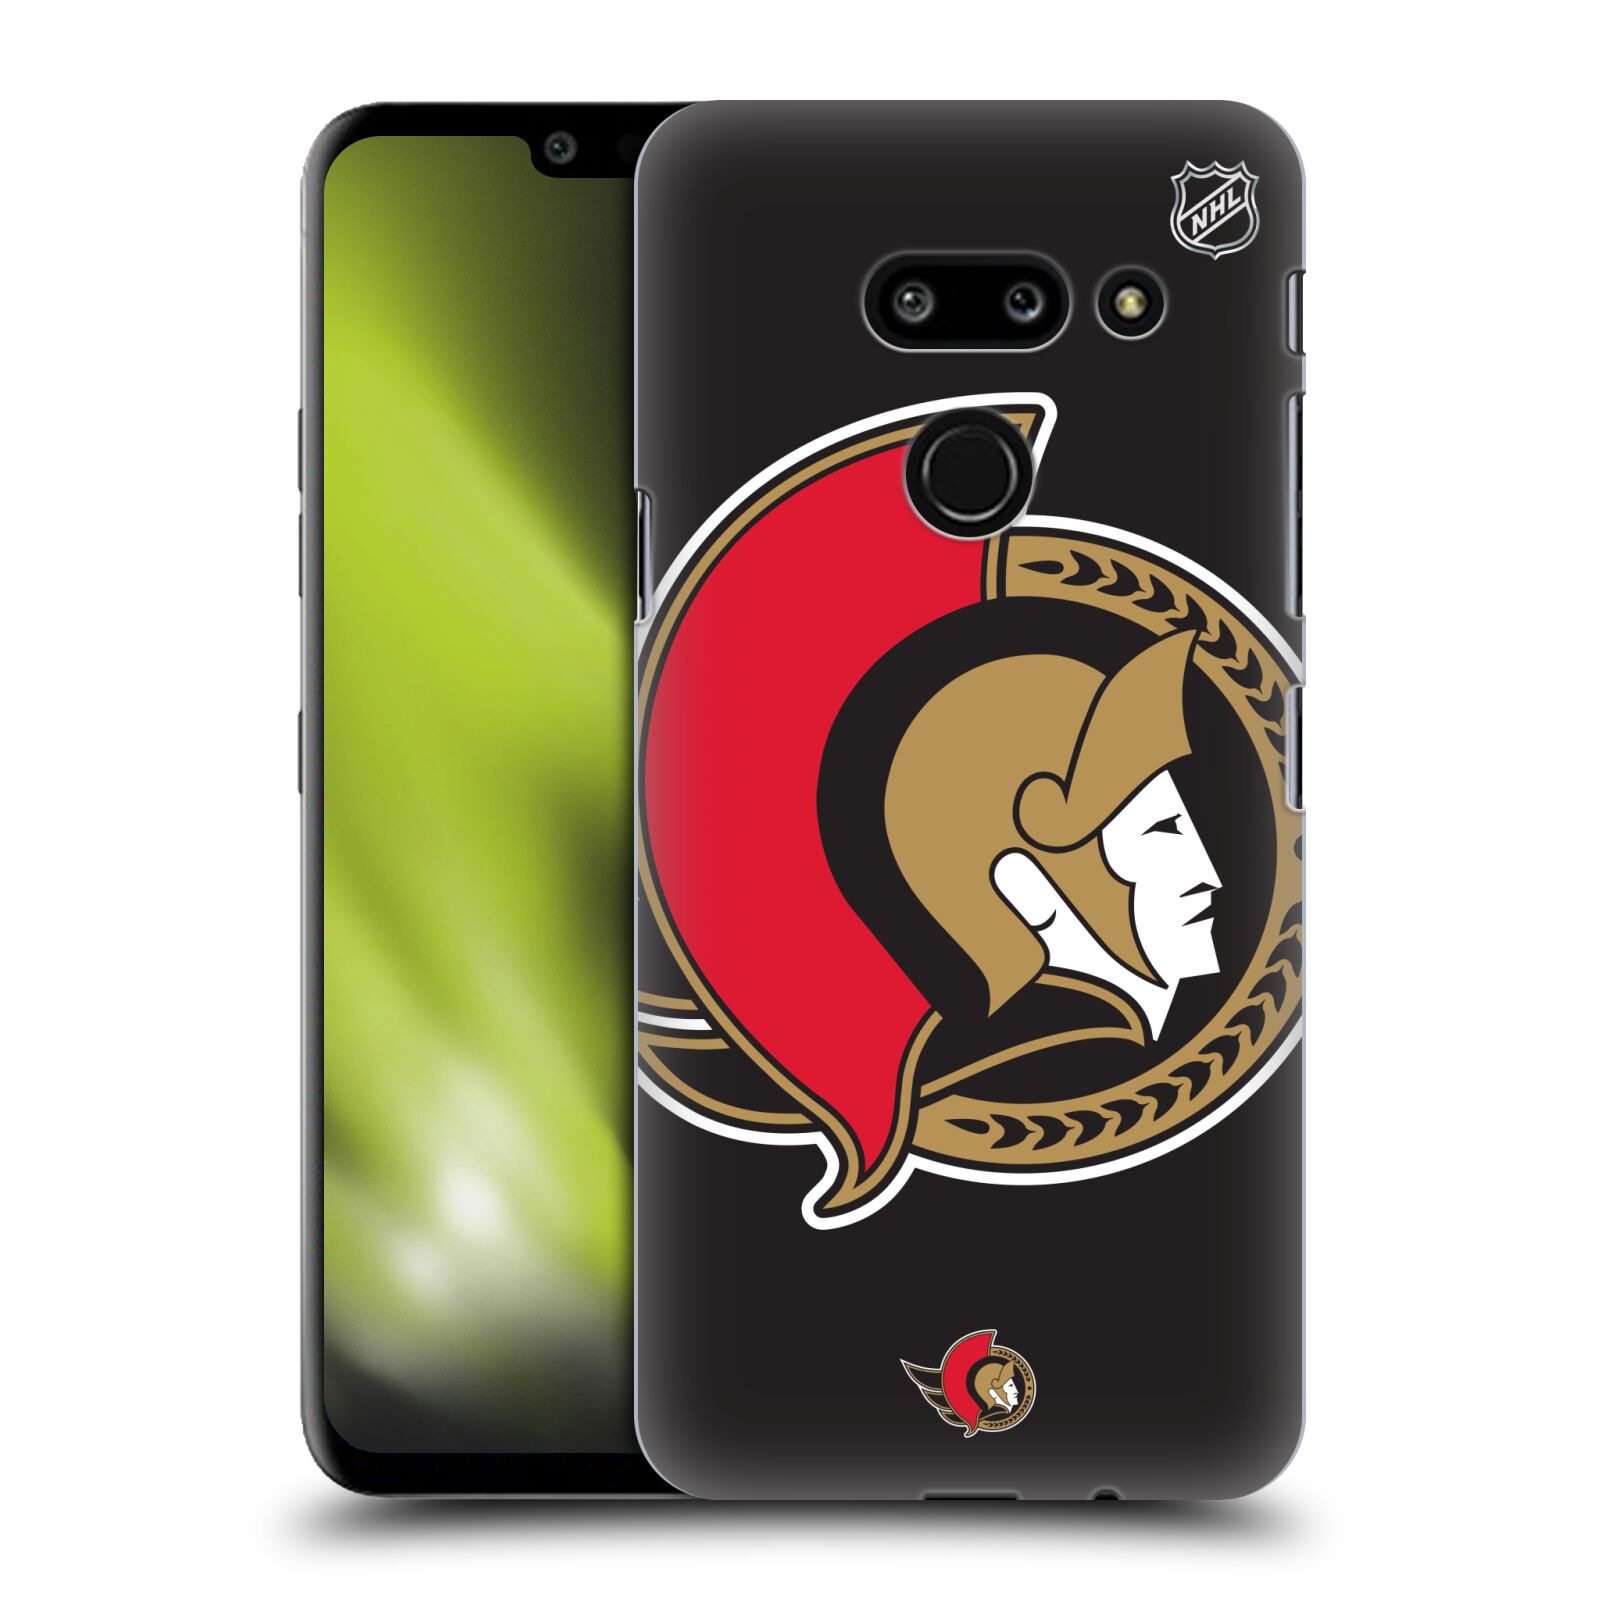 Pouzdro na mobil LG G8 ThinQ - HEAD CASE - Hokej NHL - Ottawa Senators - Velký znak